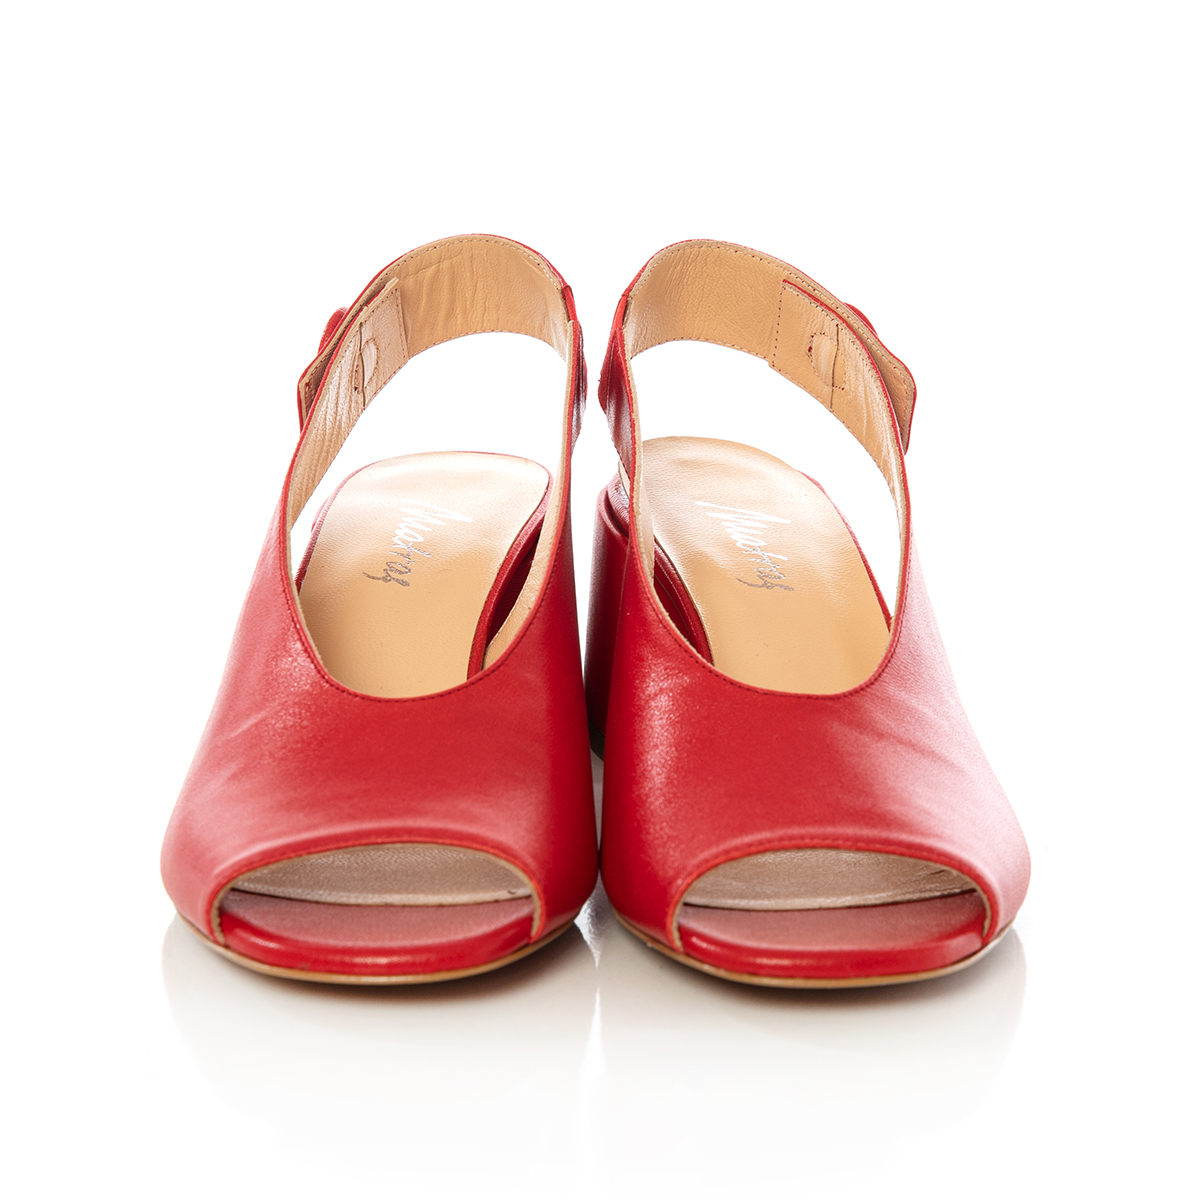 Matraş Kadın Deri Topuklu Ayakkabı  Kırmızı 9FF-1391